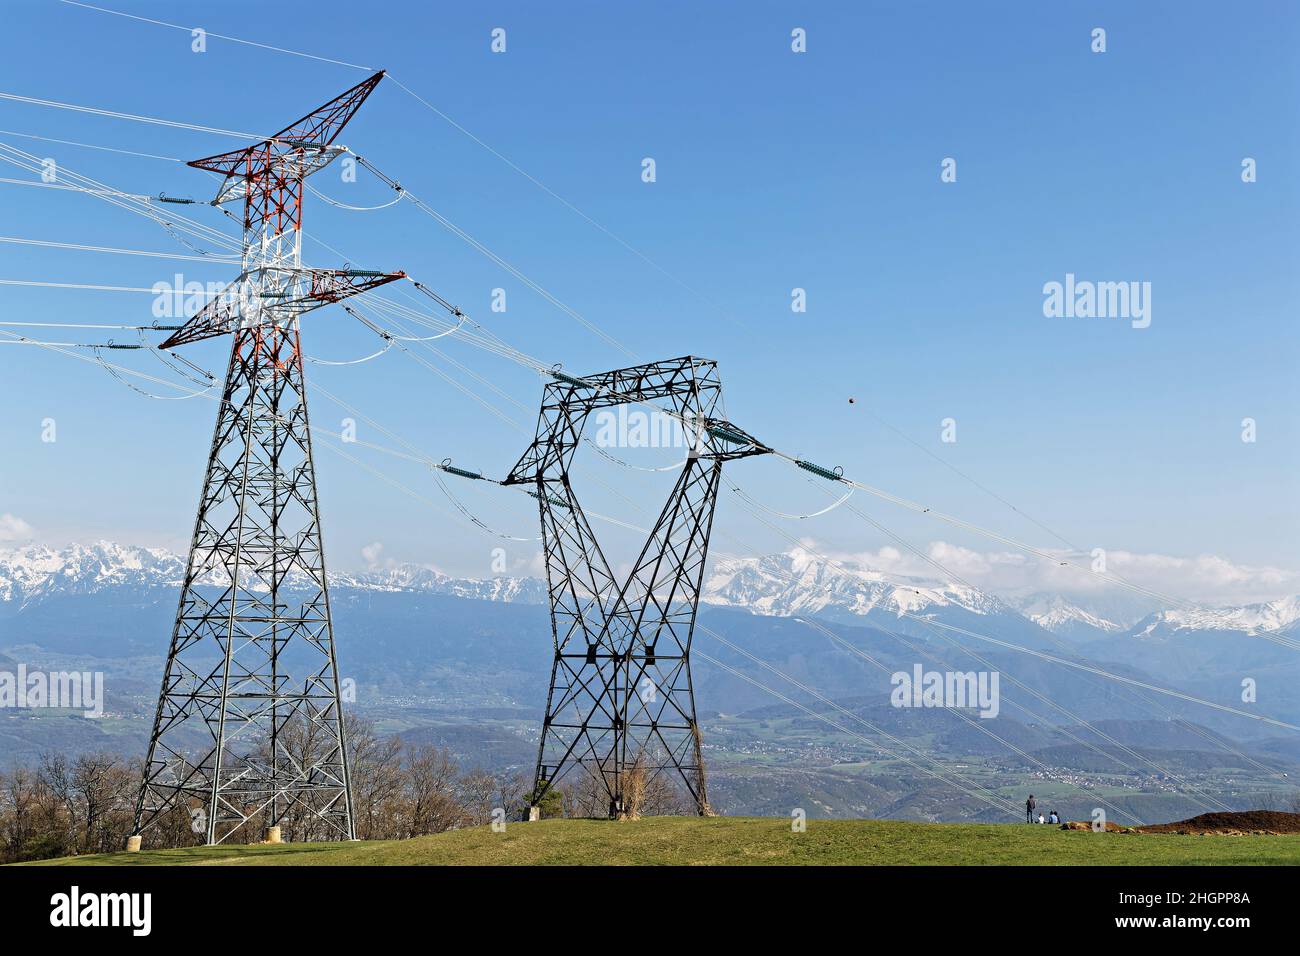 Piloni elettrici in un paesaggio di campagna con montagne innevate sullo sfondo Foto Stock